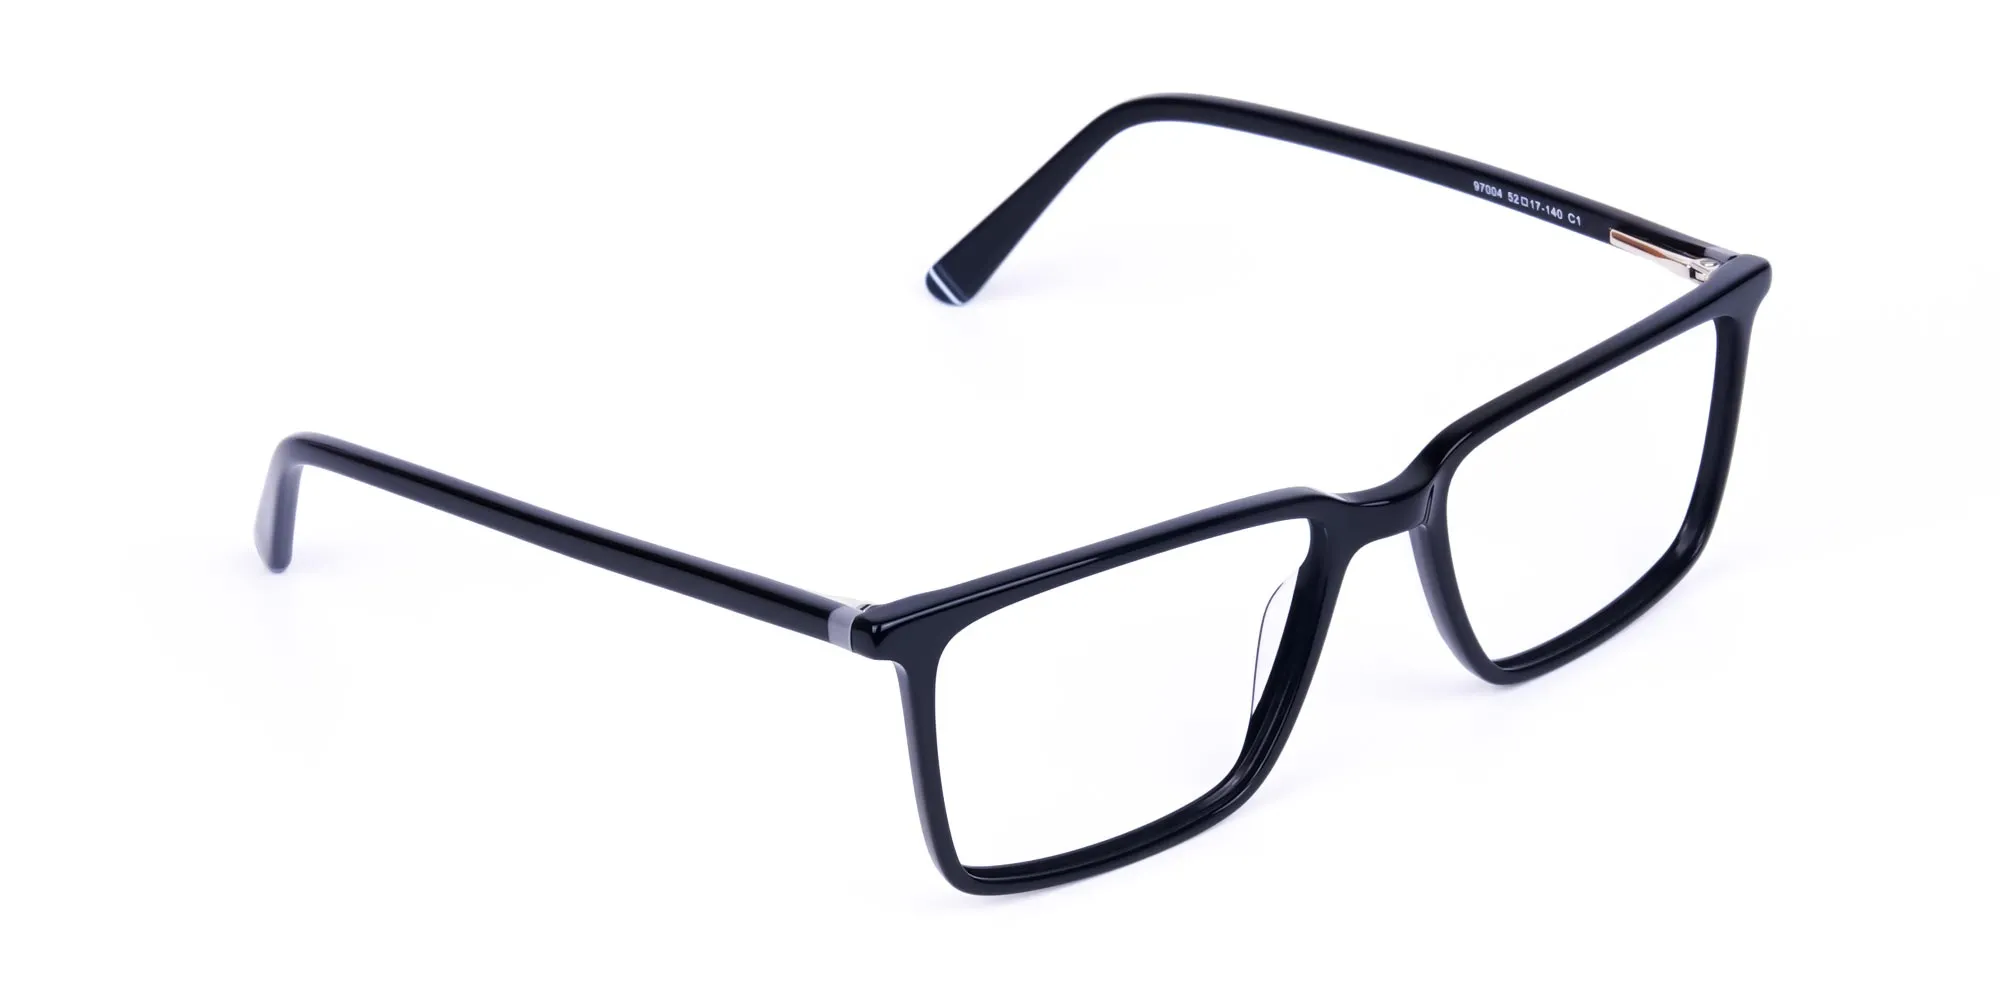 Black-Fully-Rimmed-Rectangular-Glasses-2